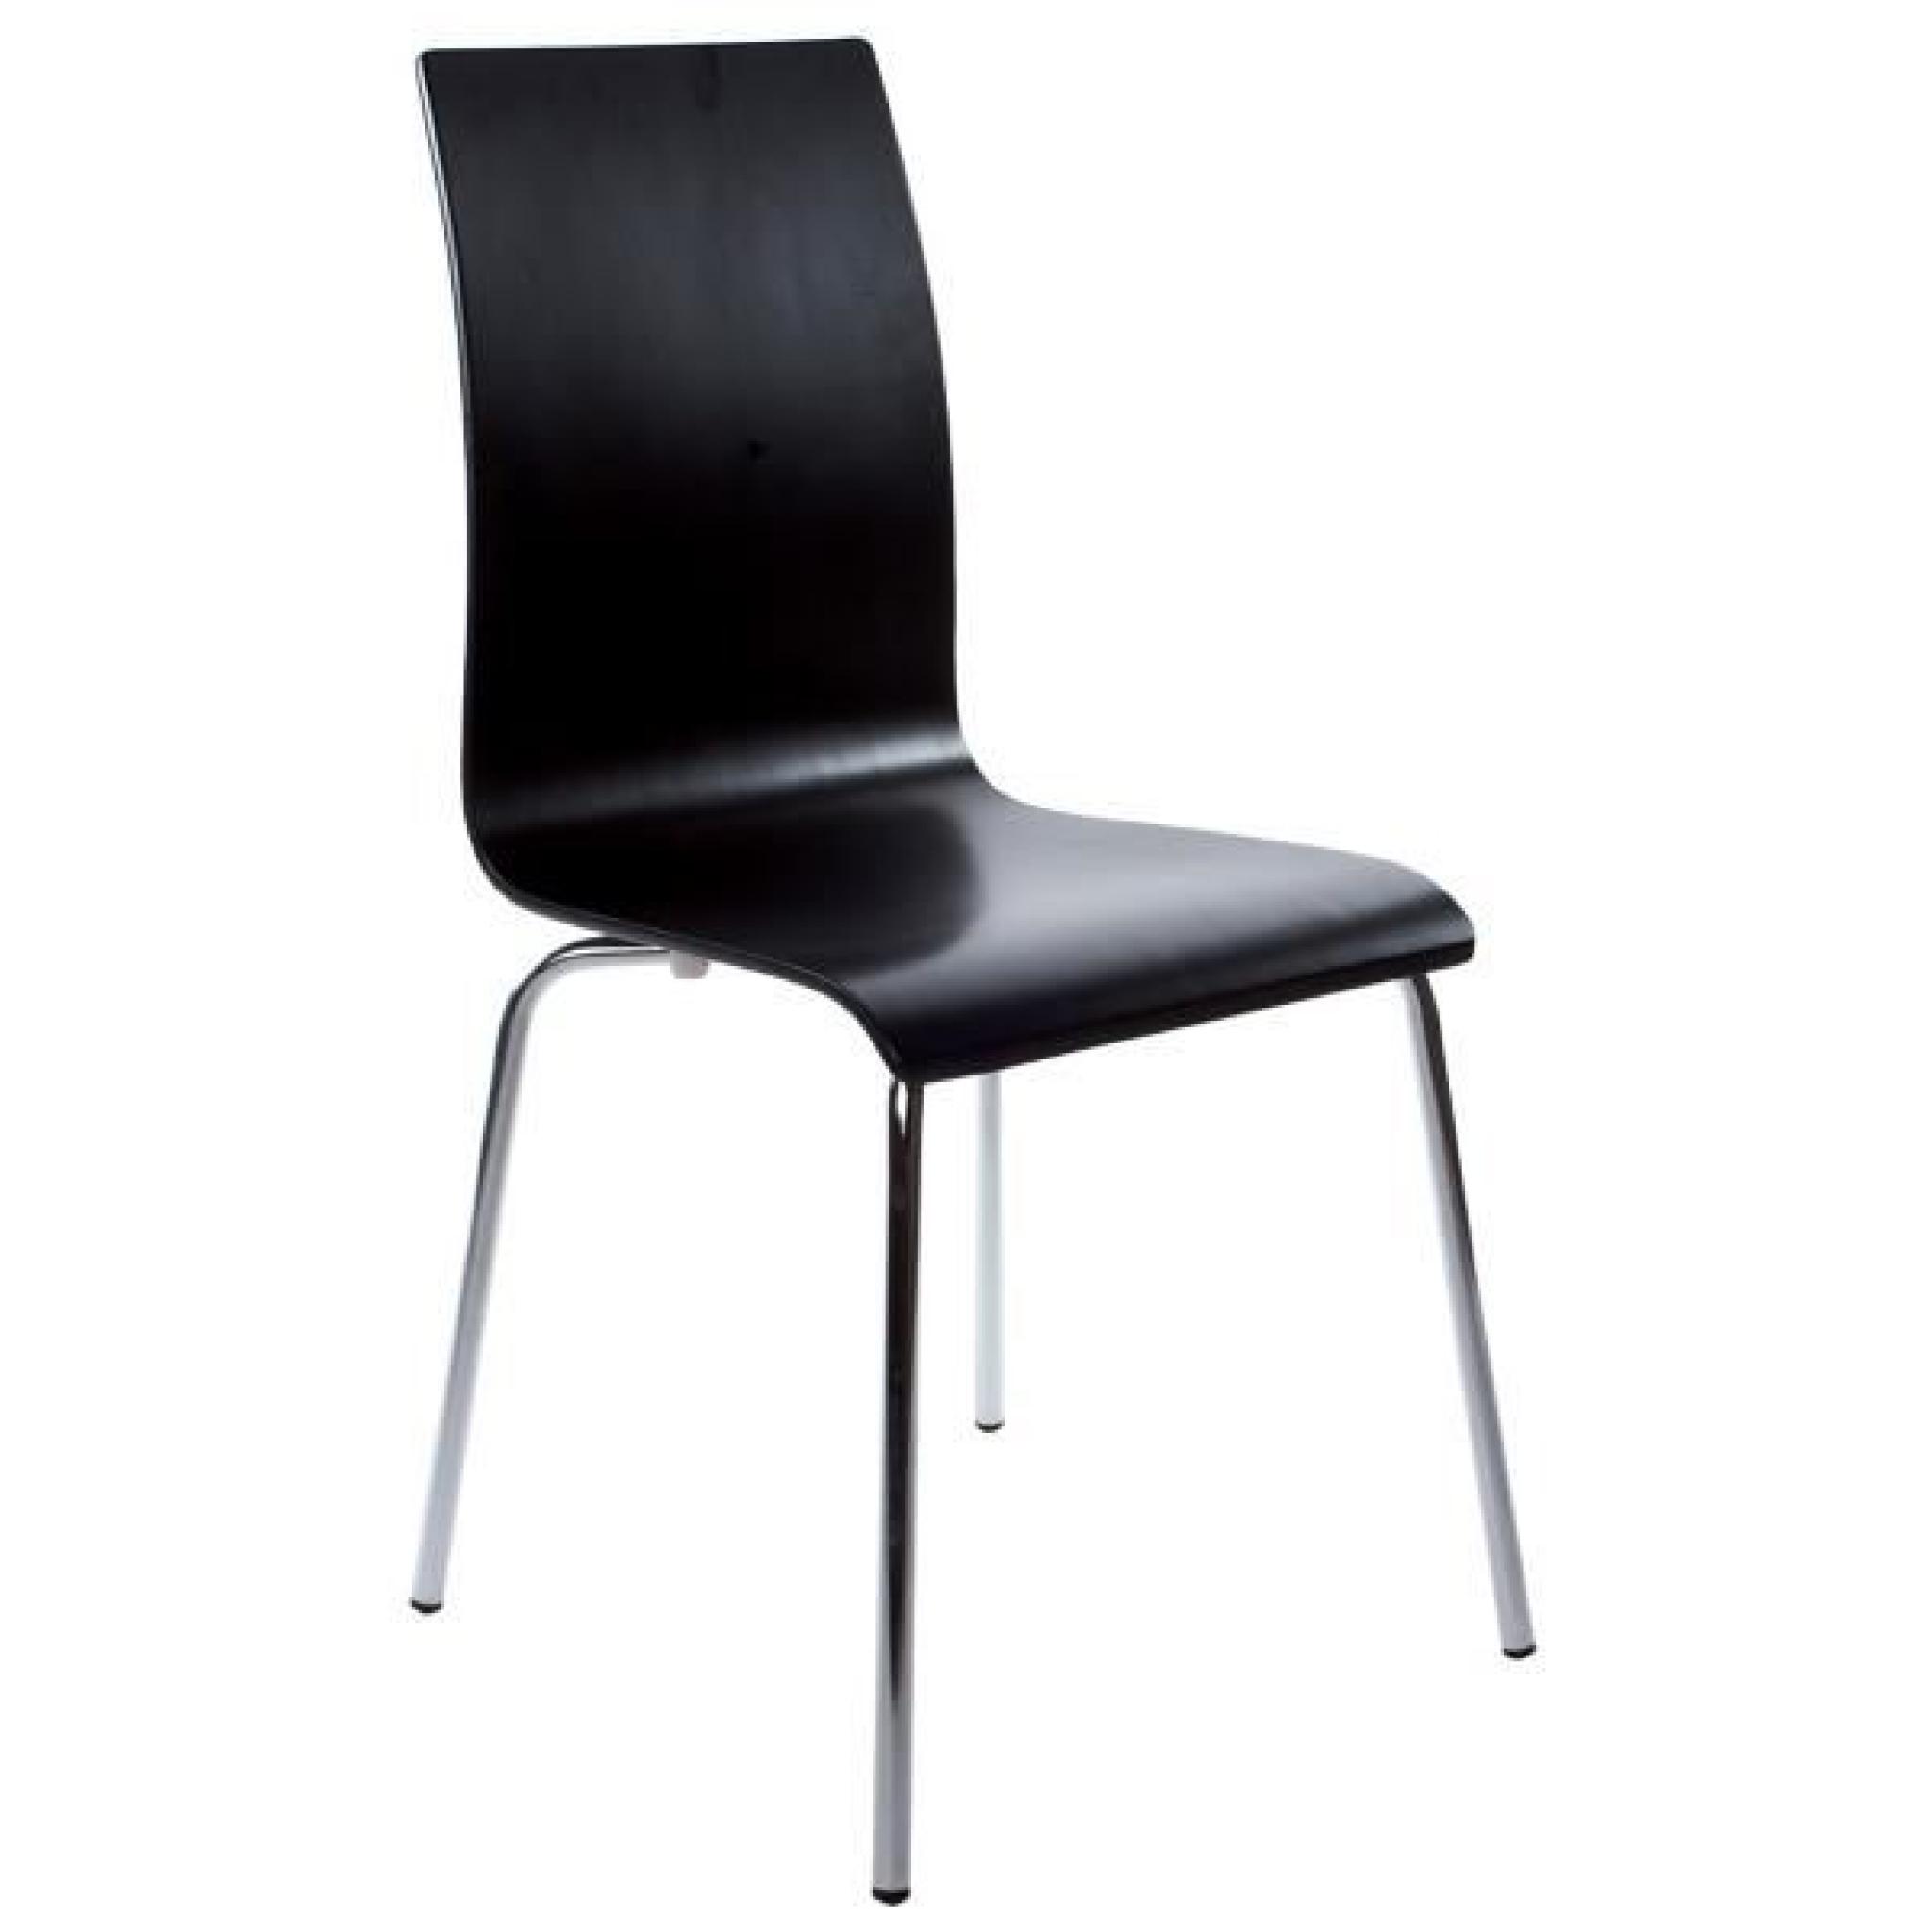 Chaise design en bois ou dérivés de couleur noir